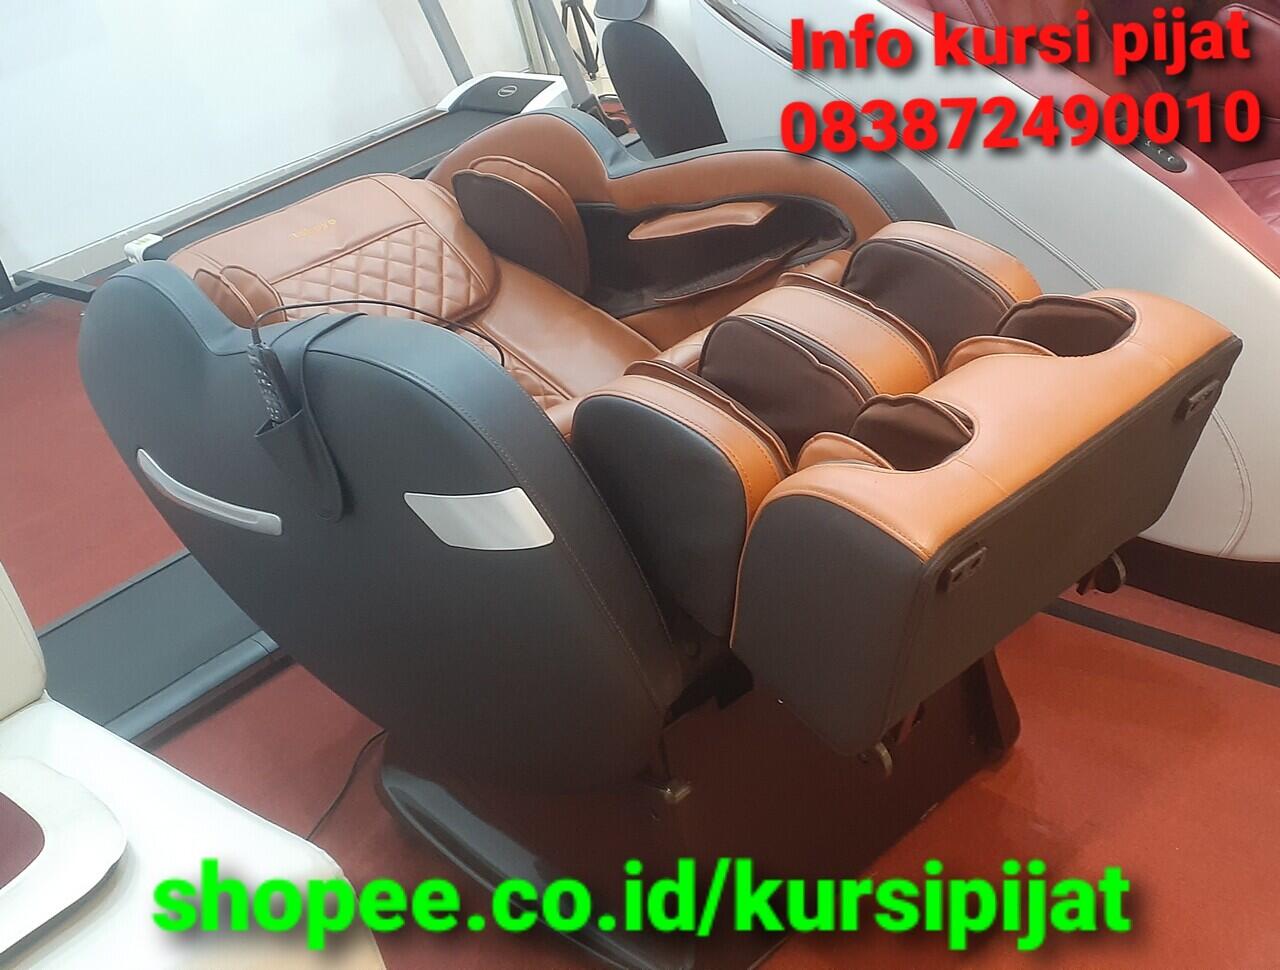 Kursi Pijat Merk Tokuyo Tipe TC 395 Versi HD Deluxe Massage Chair